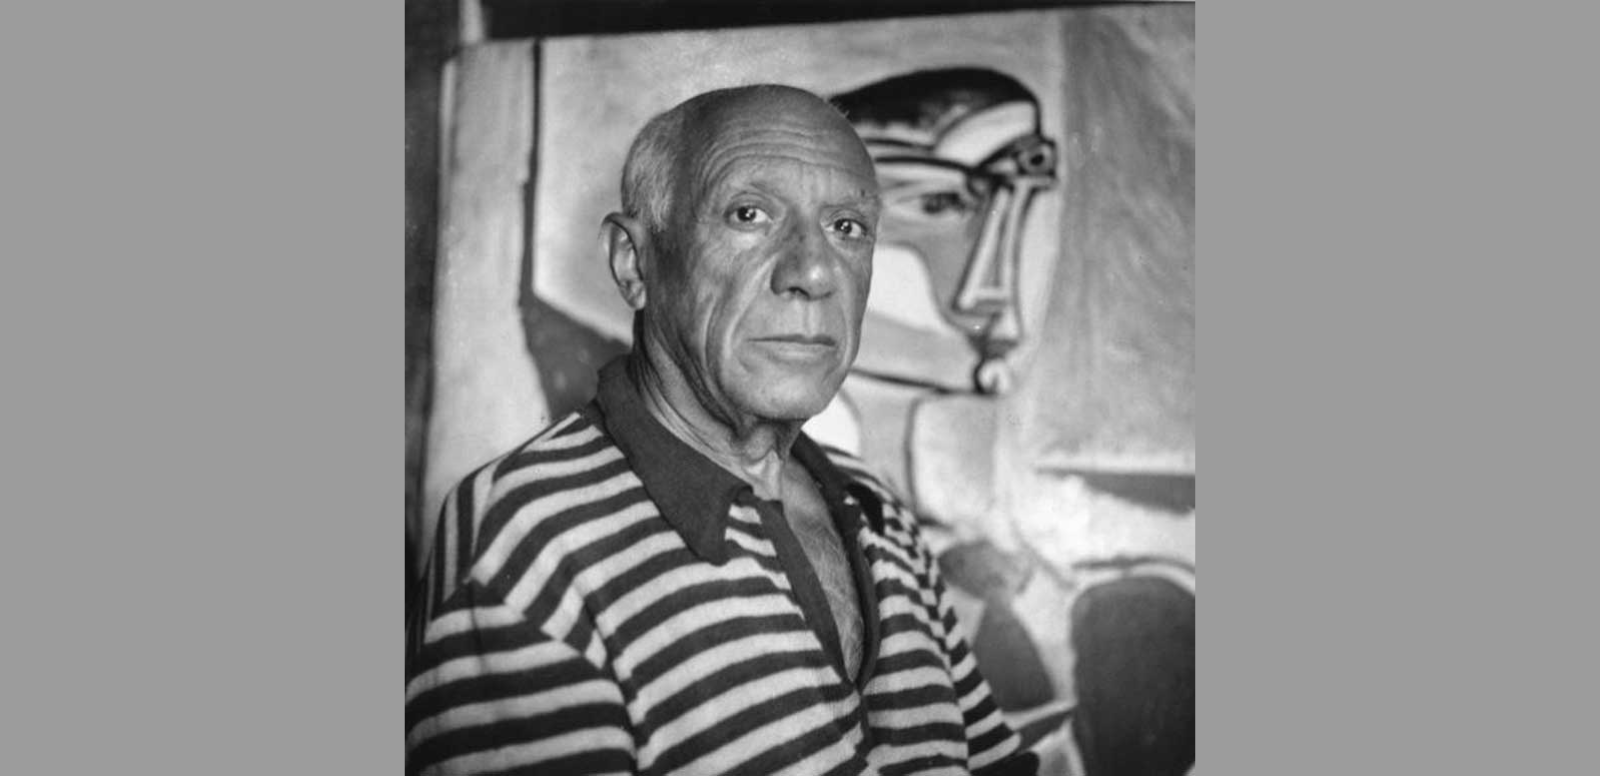 Fotografía de Picasso con su famoso suéter de rayas